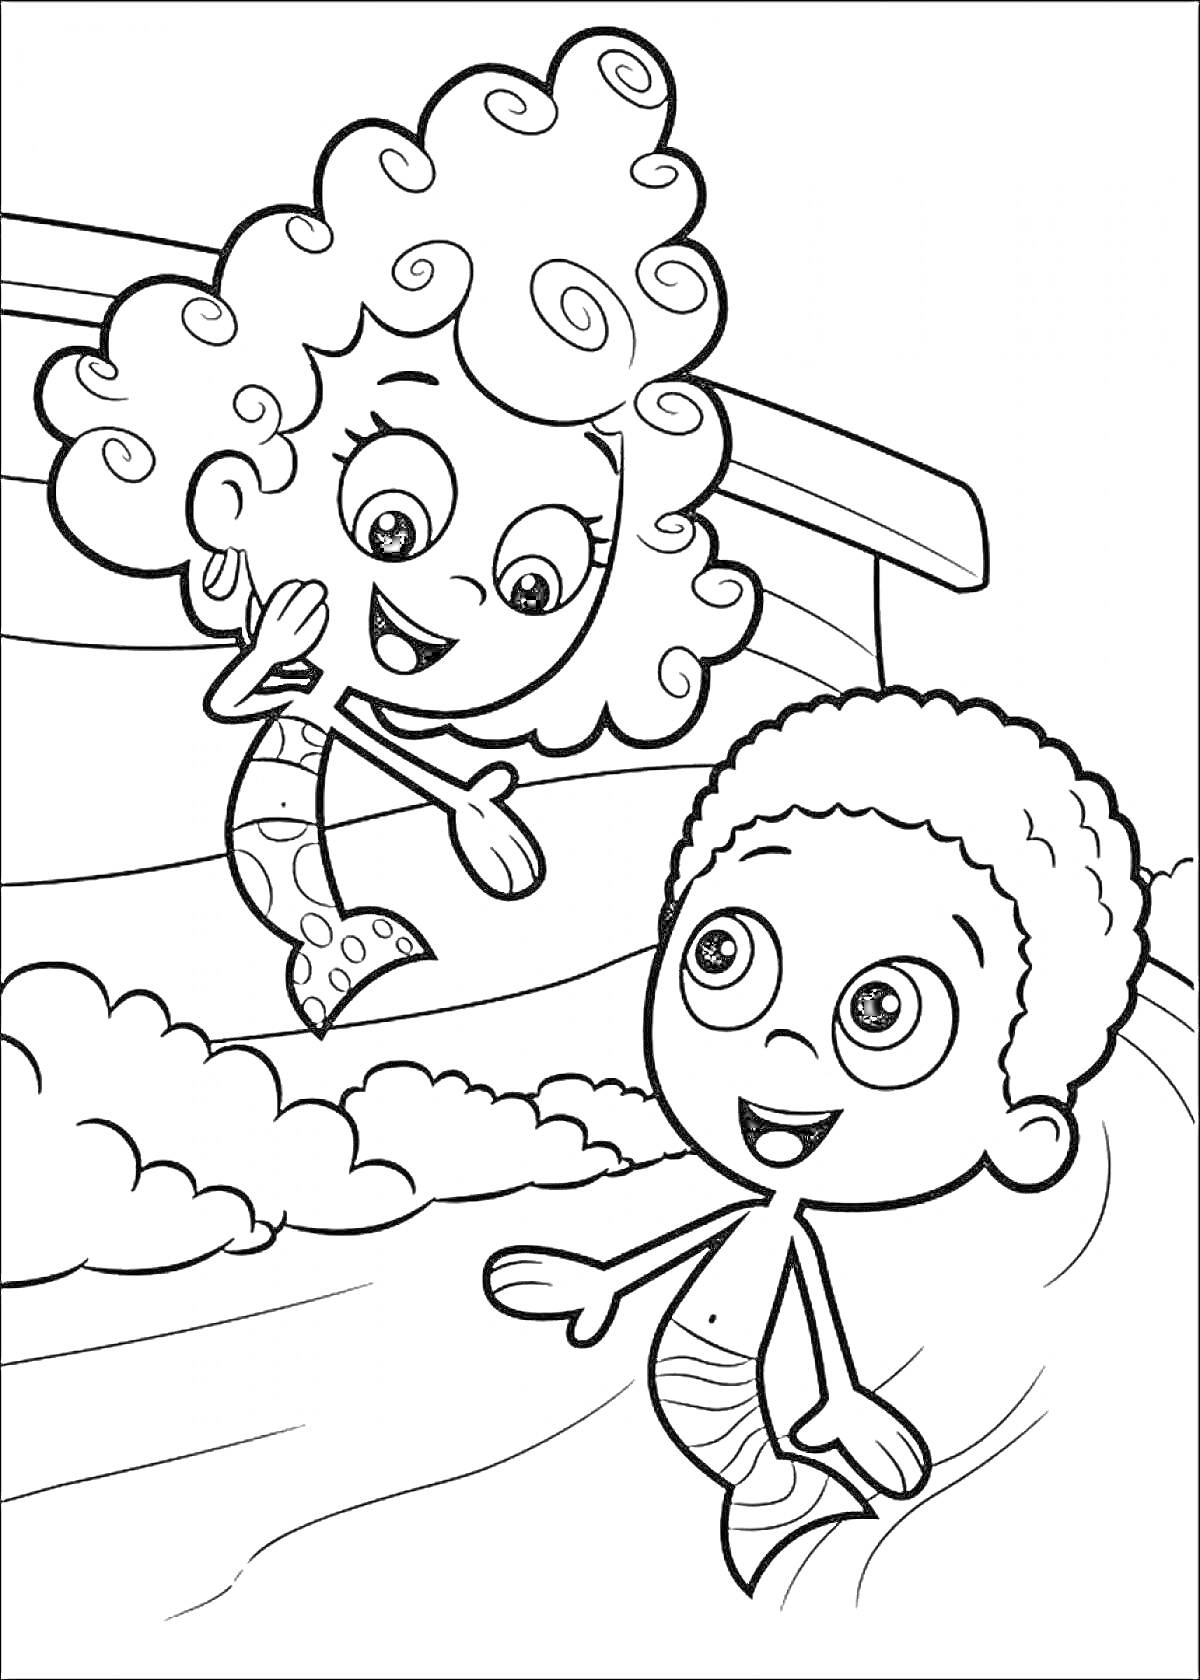 Подружка-гуппи и гуппи-мальчик в бассейне с пузырьками